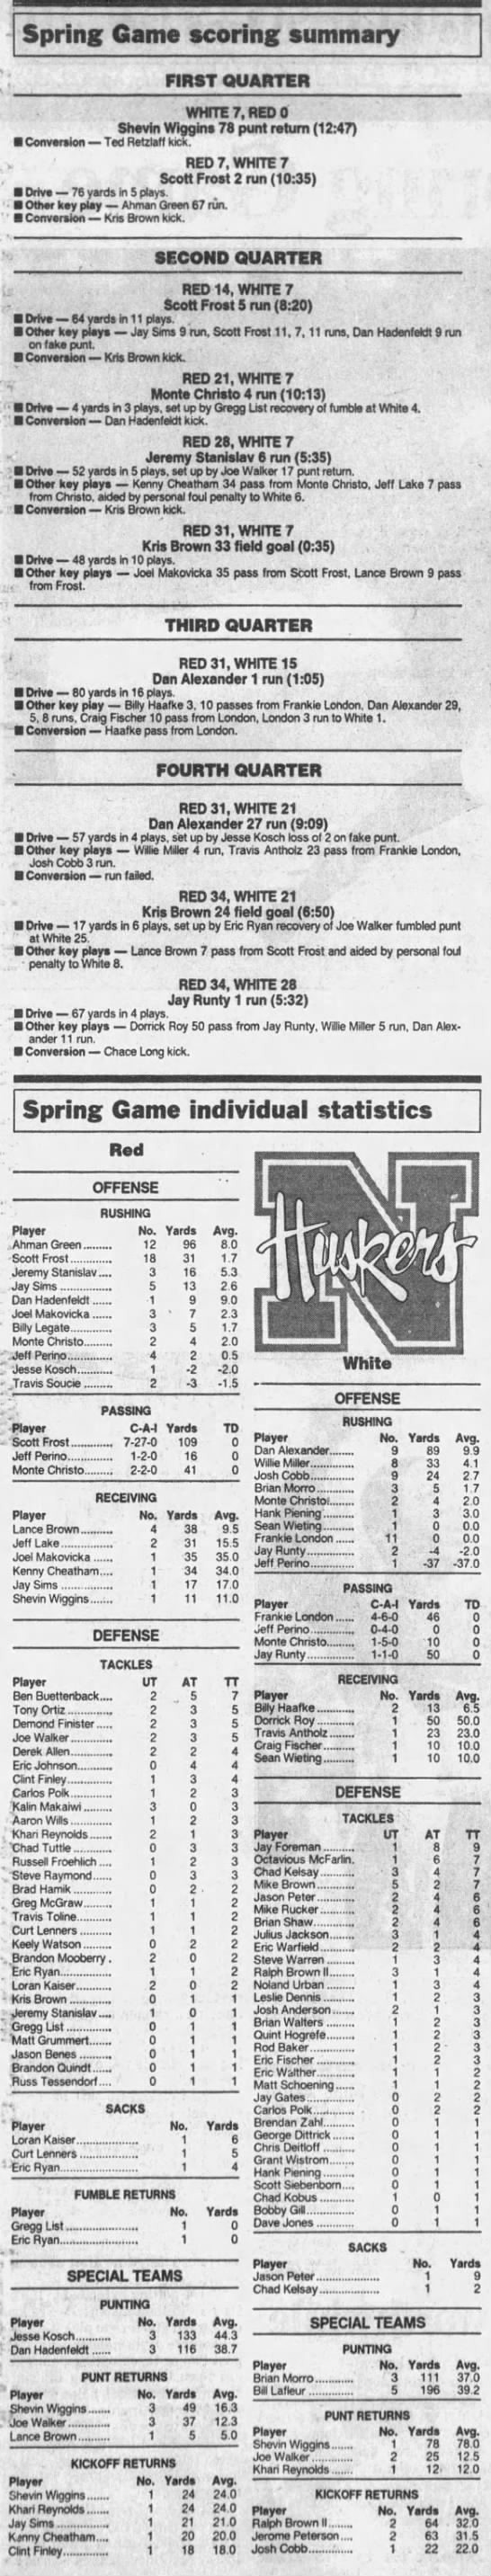 1997 Nebraska spring game stats - 